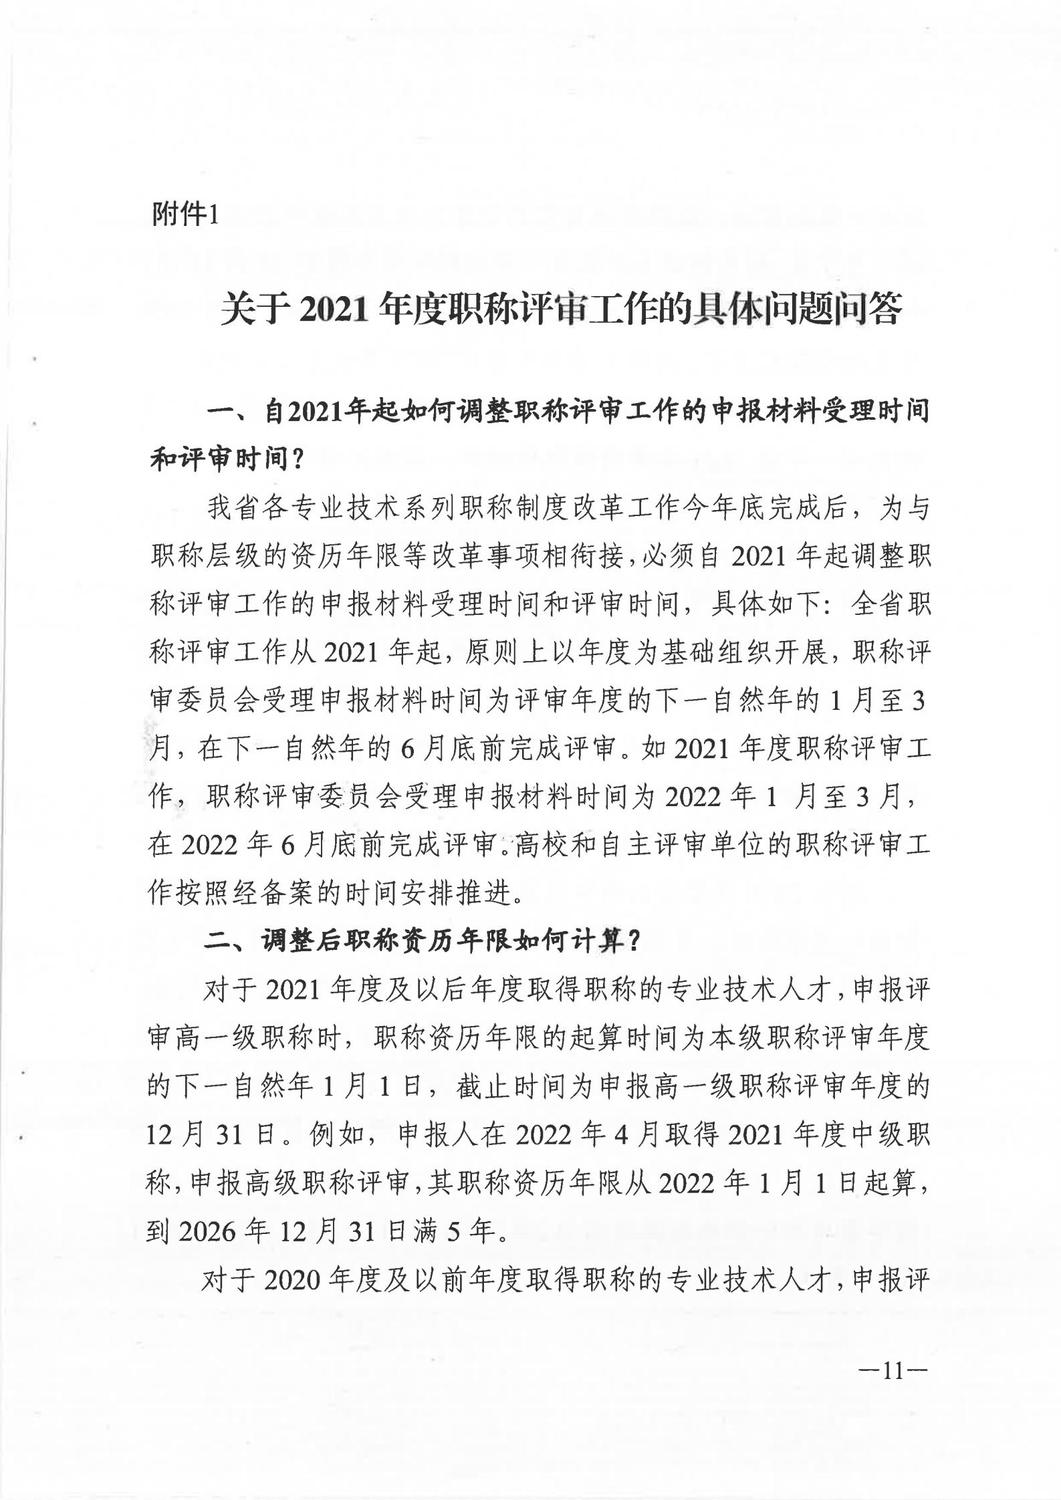 广东省人力资源和社会保障厅《关于做好2021年度职称评审工作的通知》_10.jpg